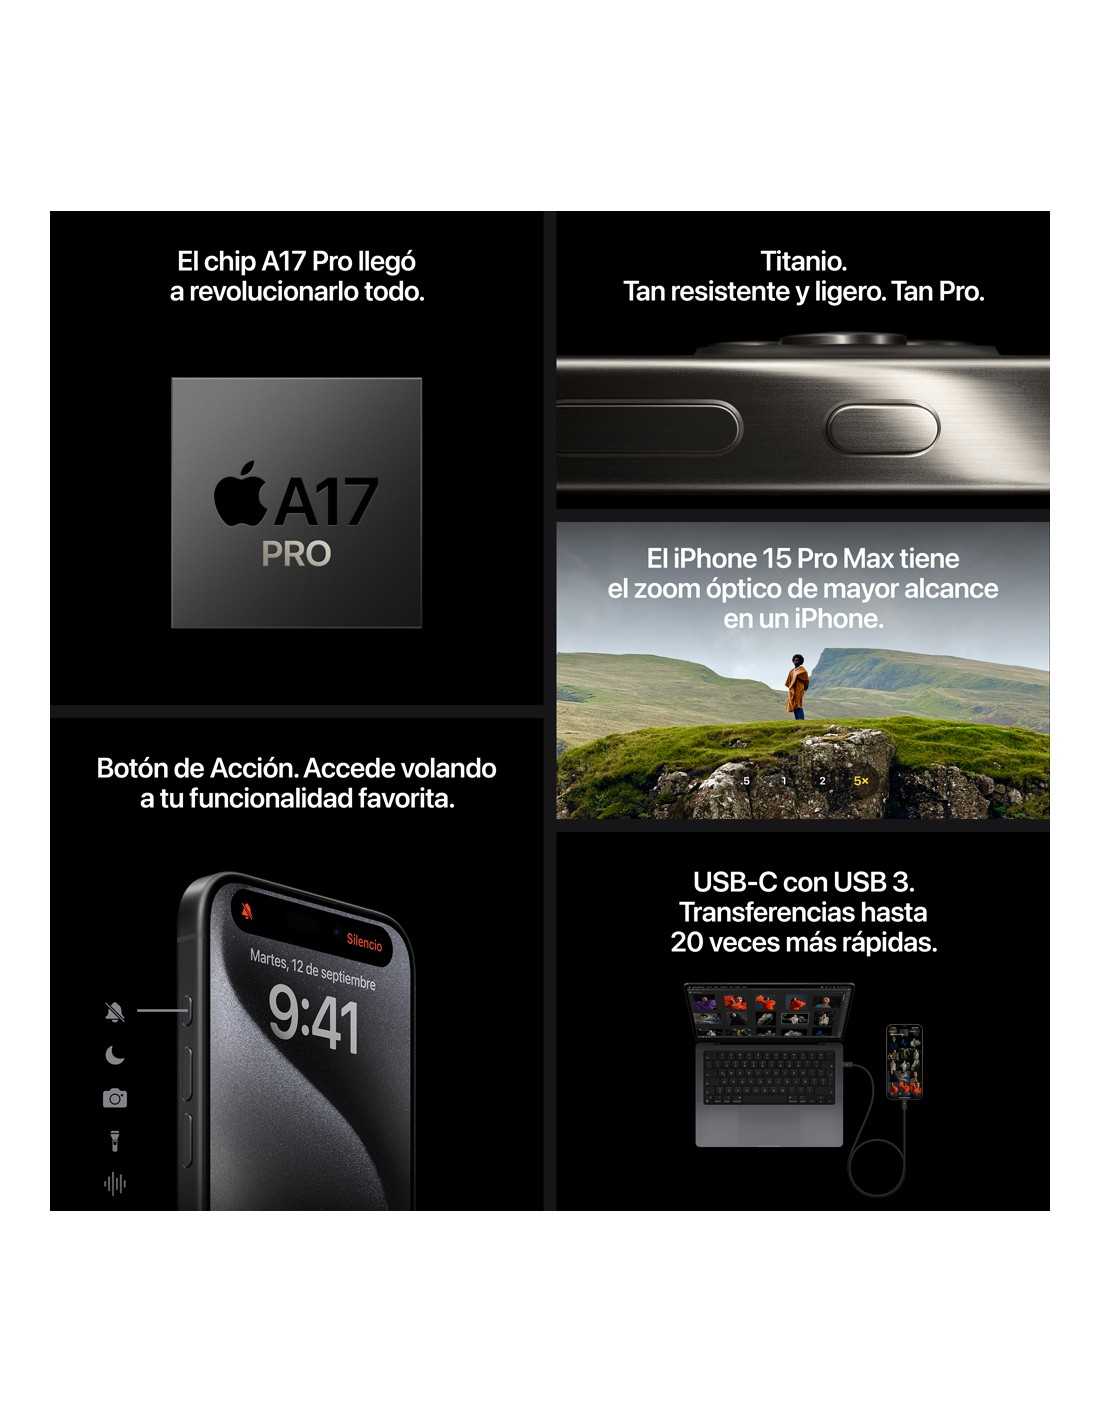 El iPhone 15 Pro tiene los marcos de titanio, USB-C, A17 Pro y un